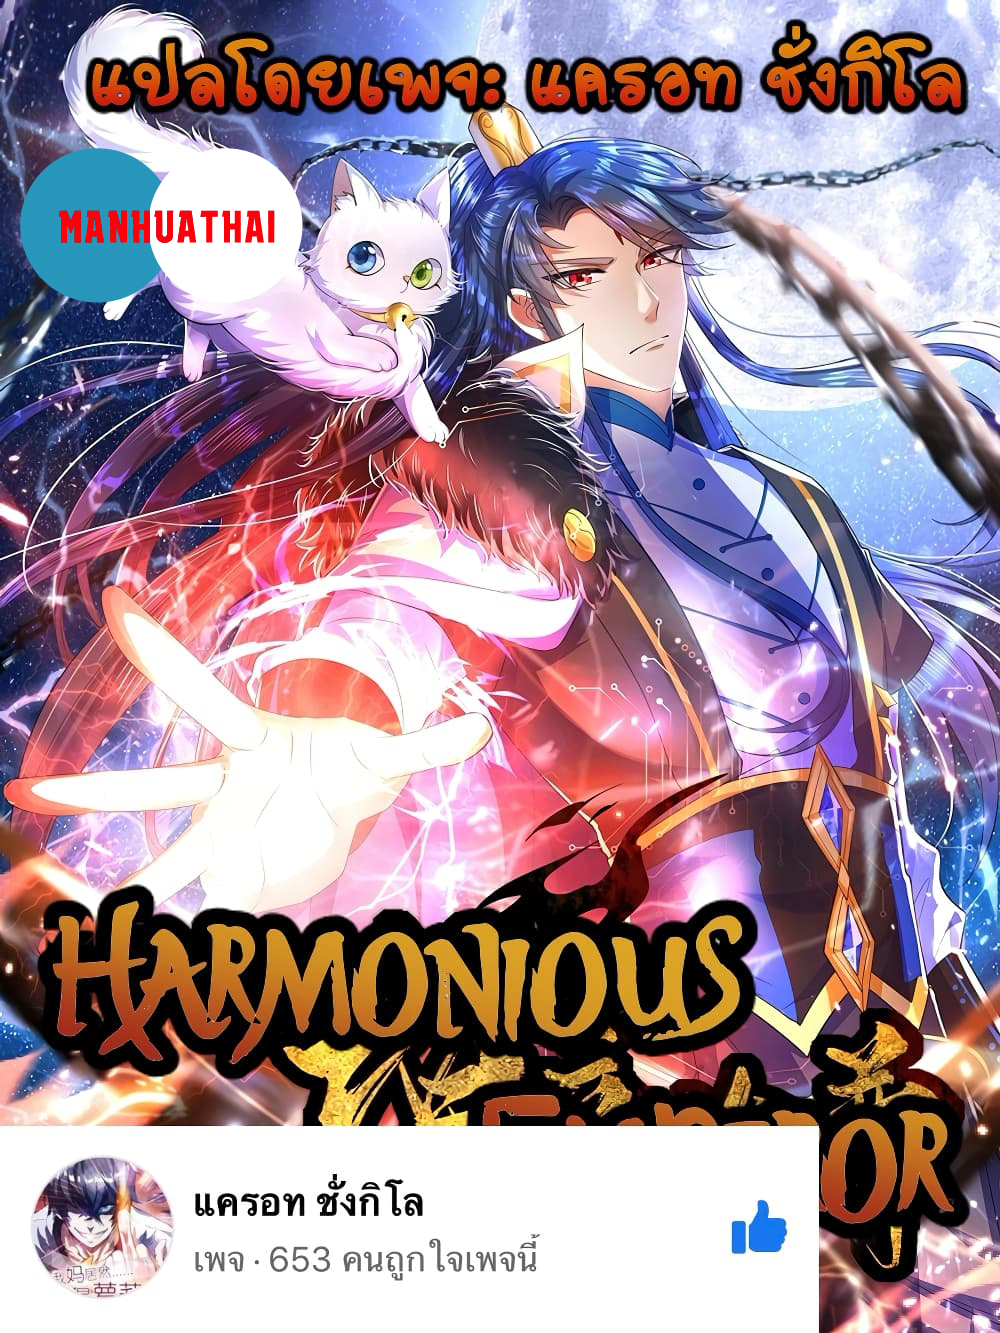 Harmonious Emperor is respected82 1